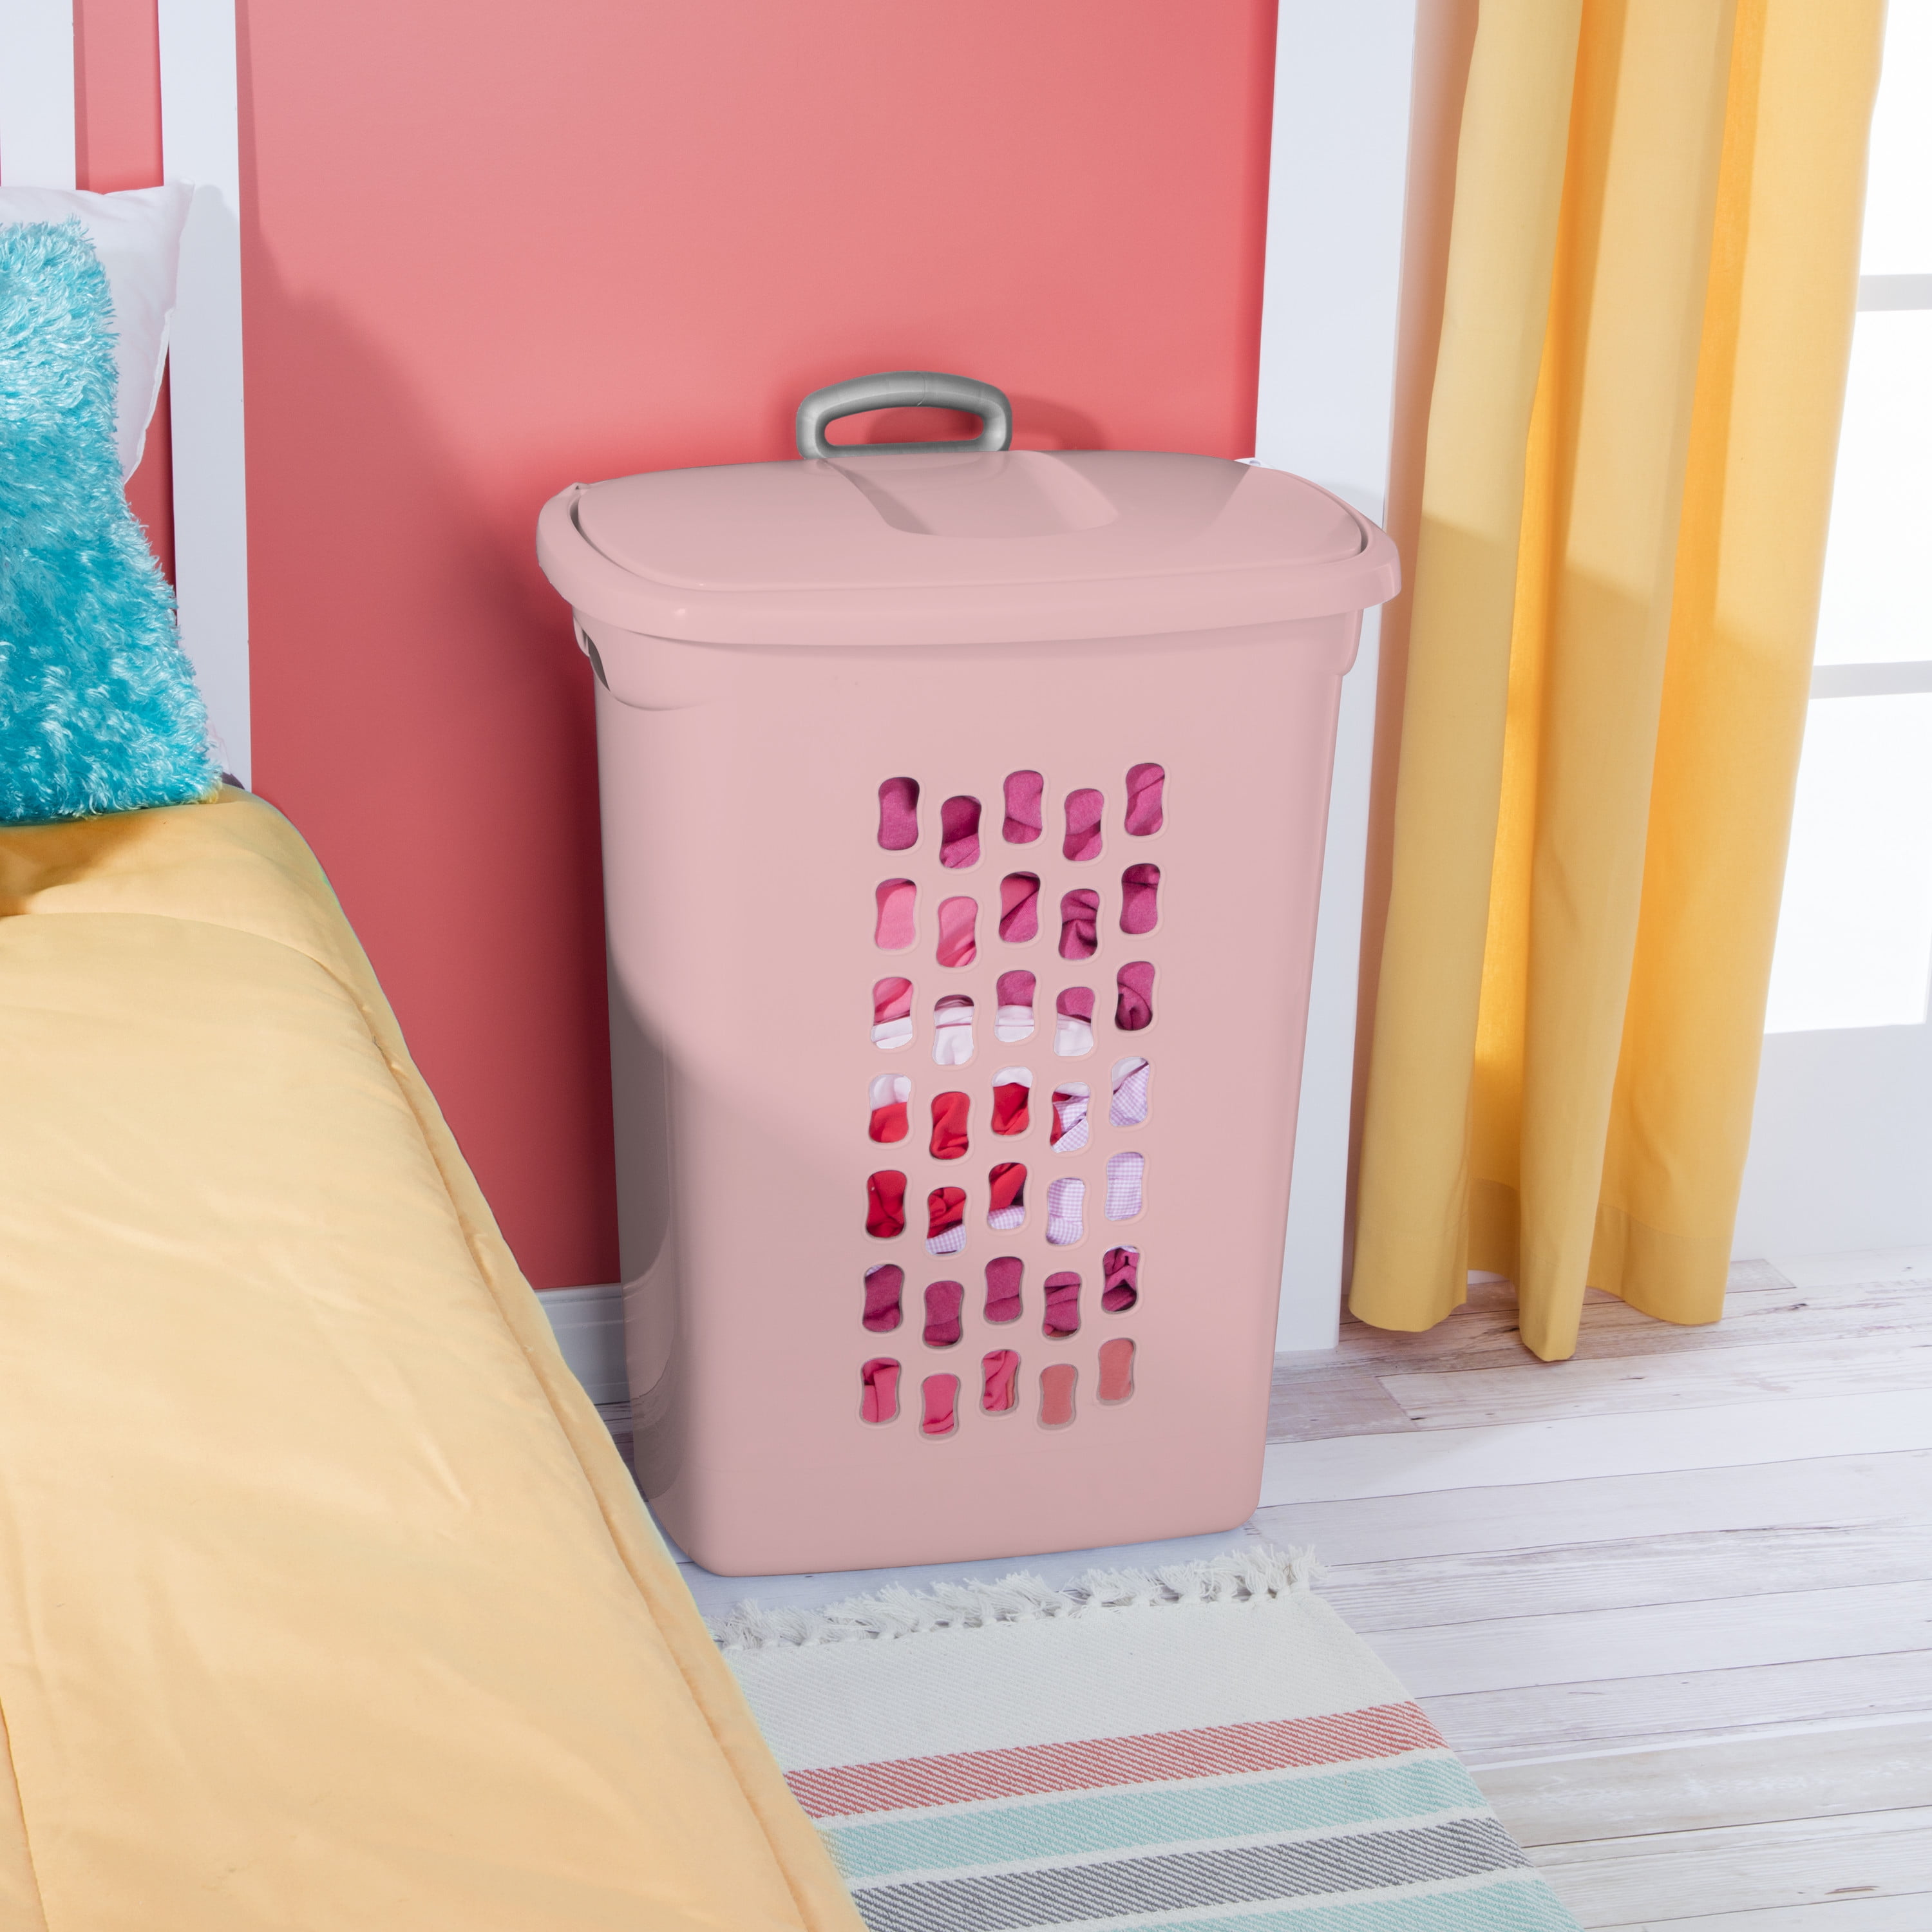 Pink Small Laundry Powder Storage Bin – UrbanPinkCollective